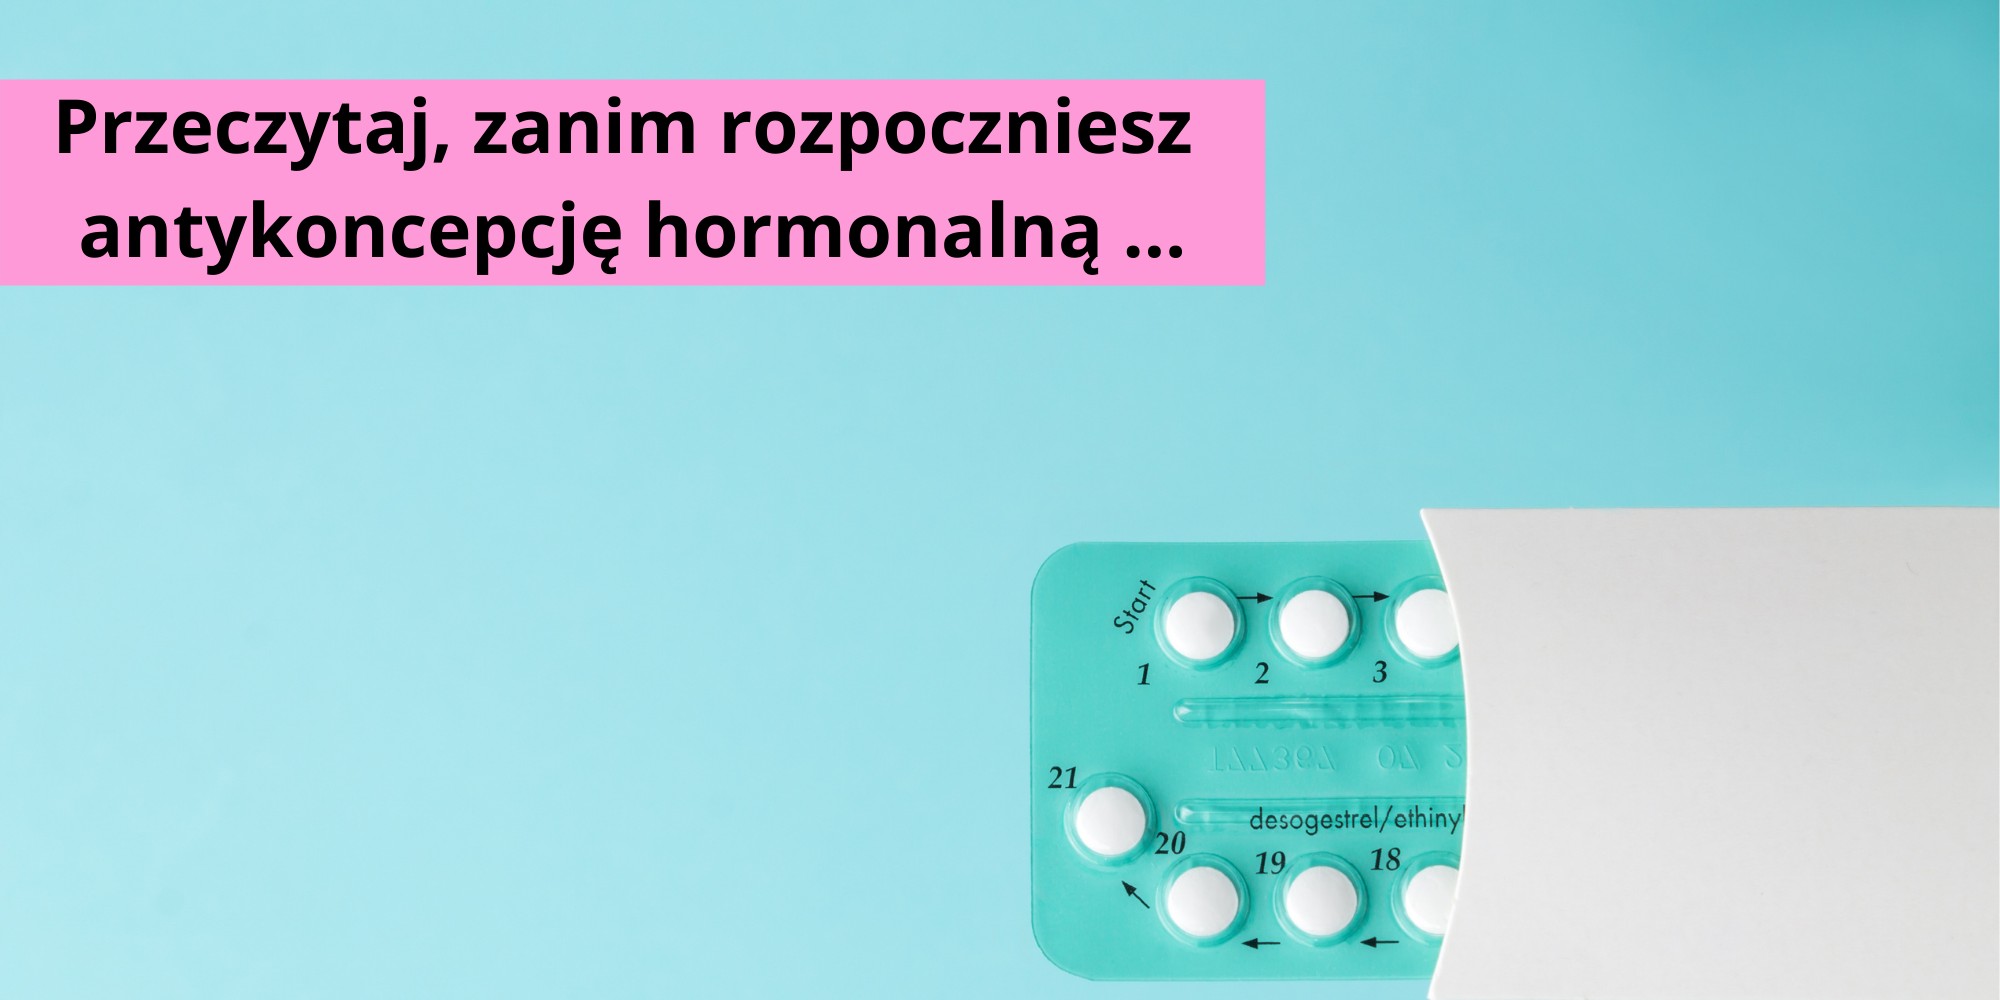 jakie badania przed rozpoczęciem antykoncepcji hormonalnej